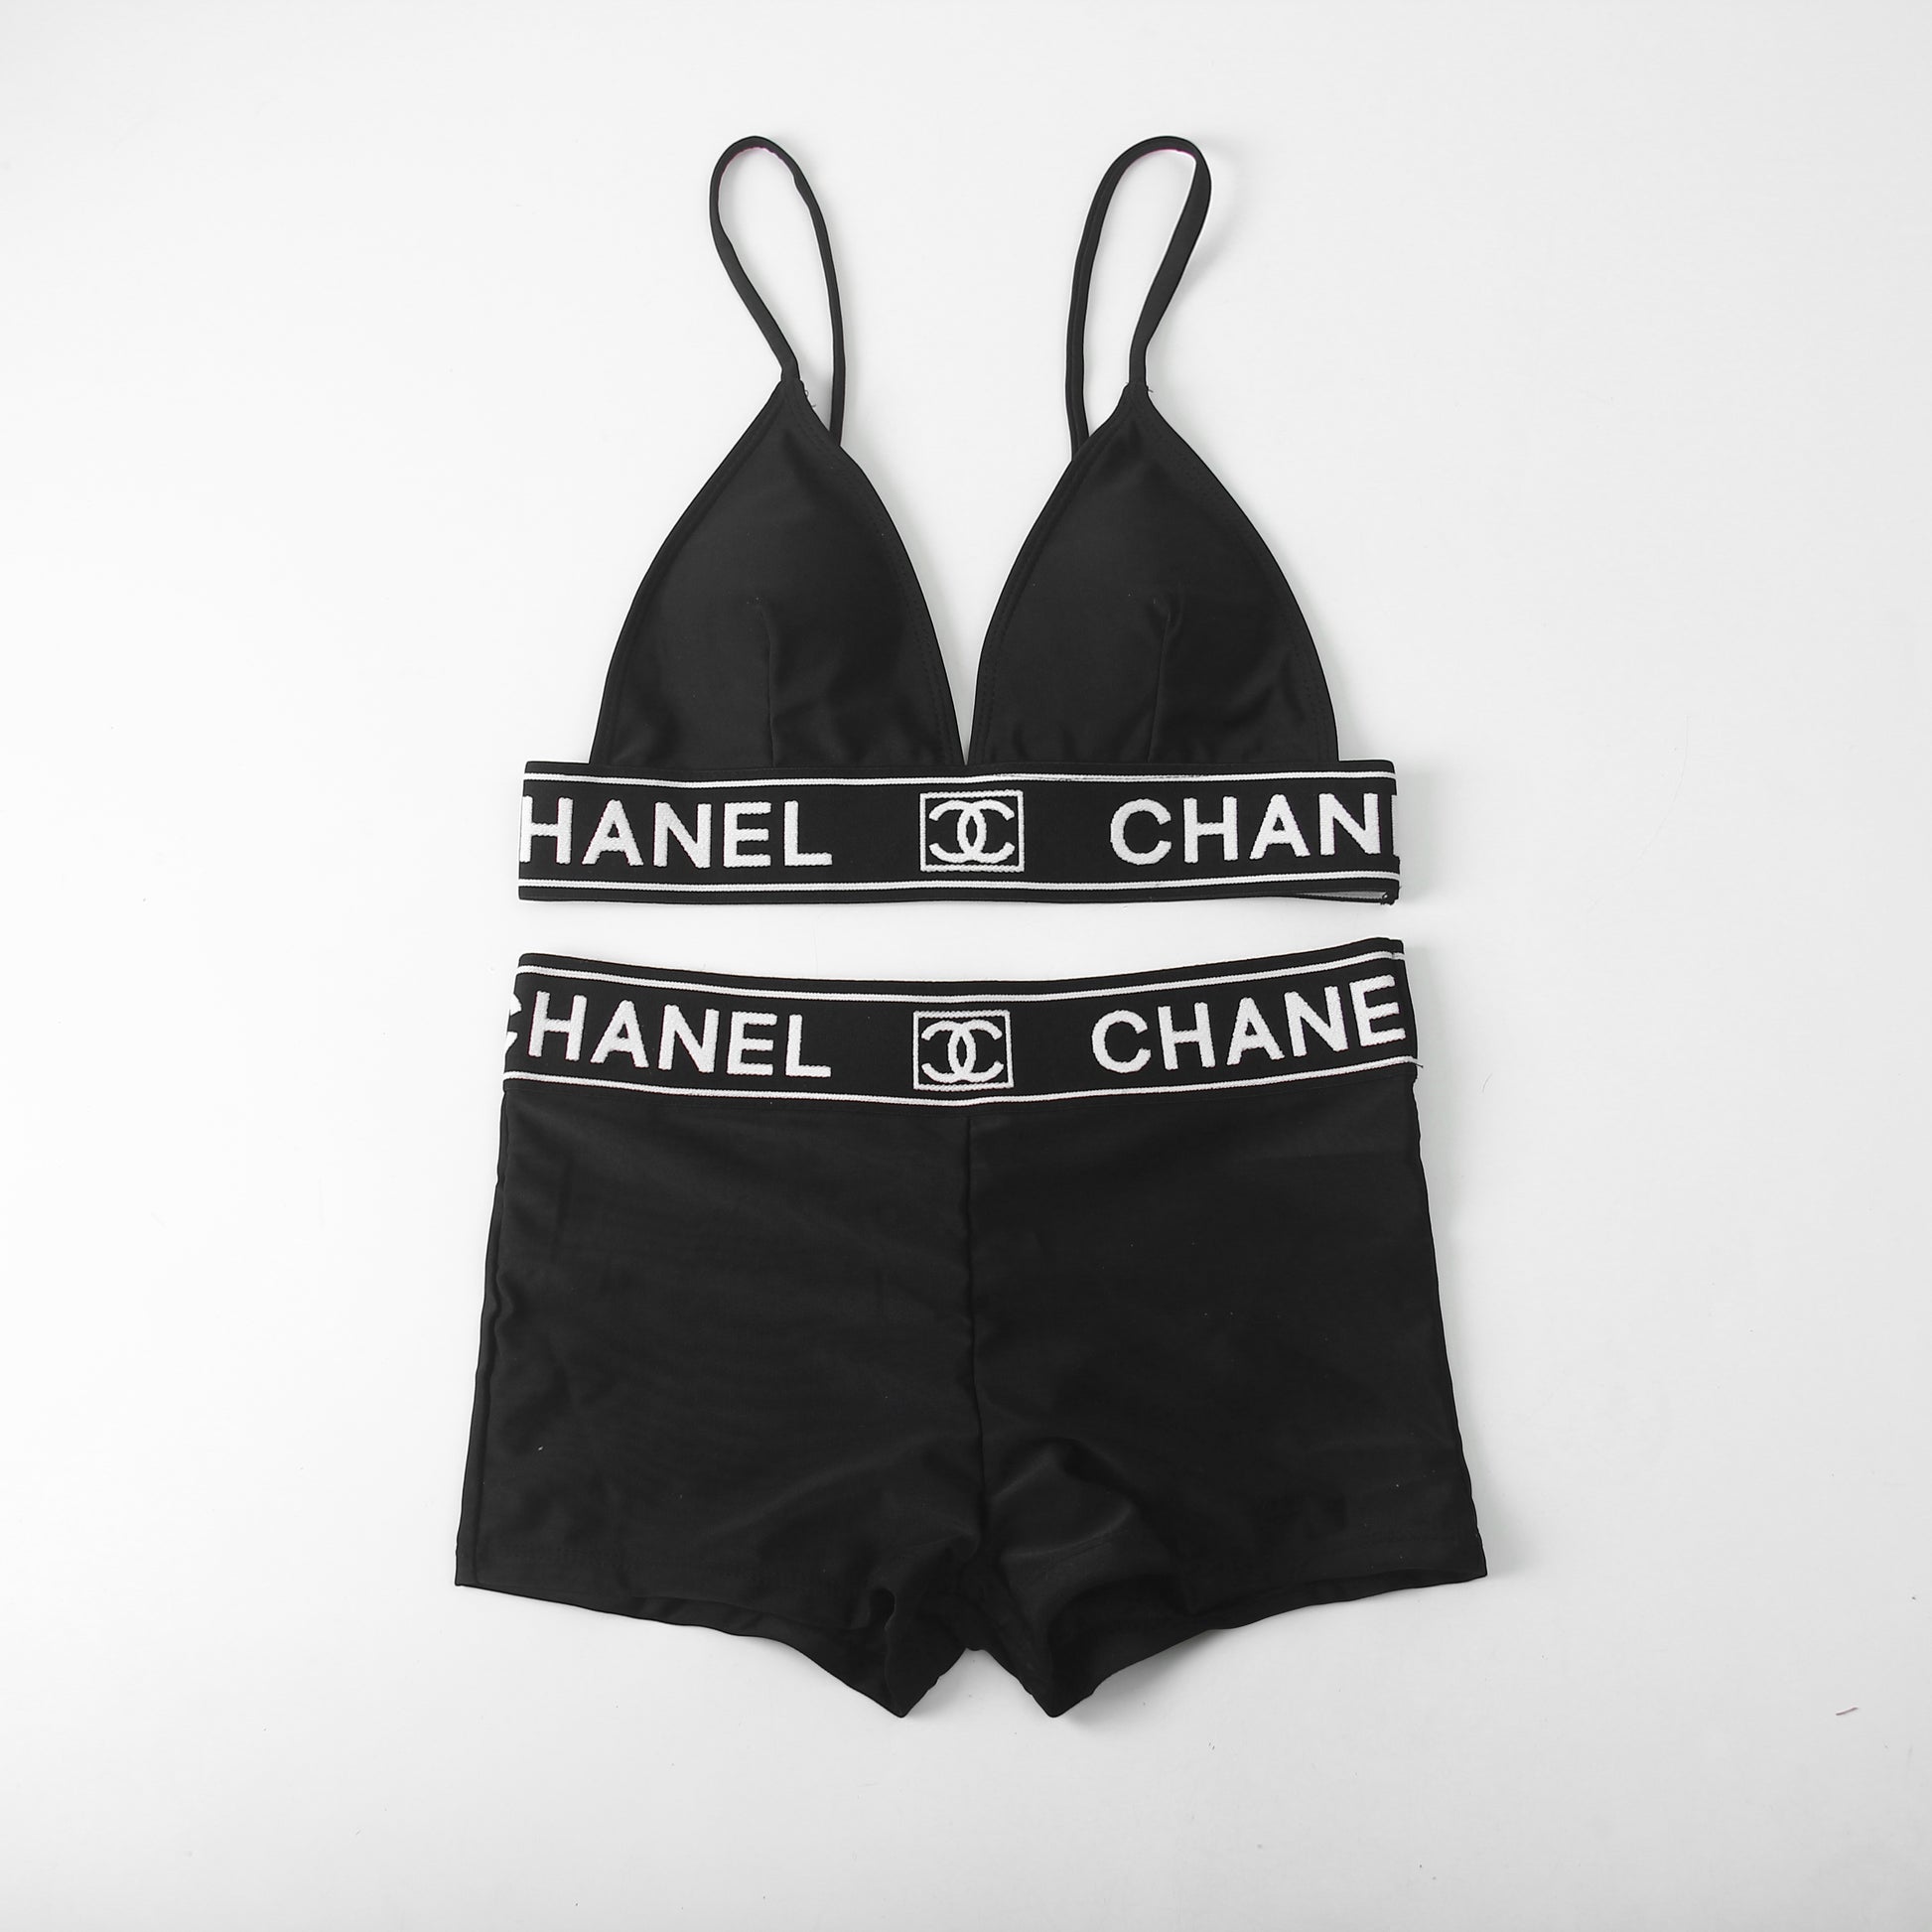 Chanel Women's Synthetic Fibers Beachwear - Black - S Chanel